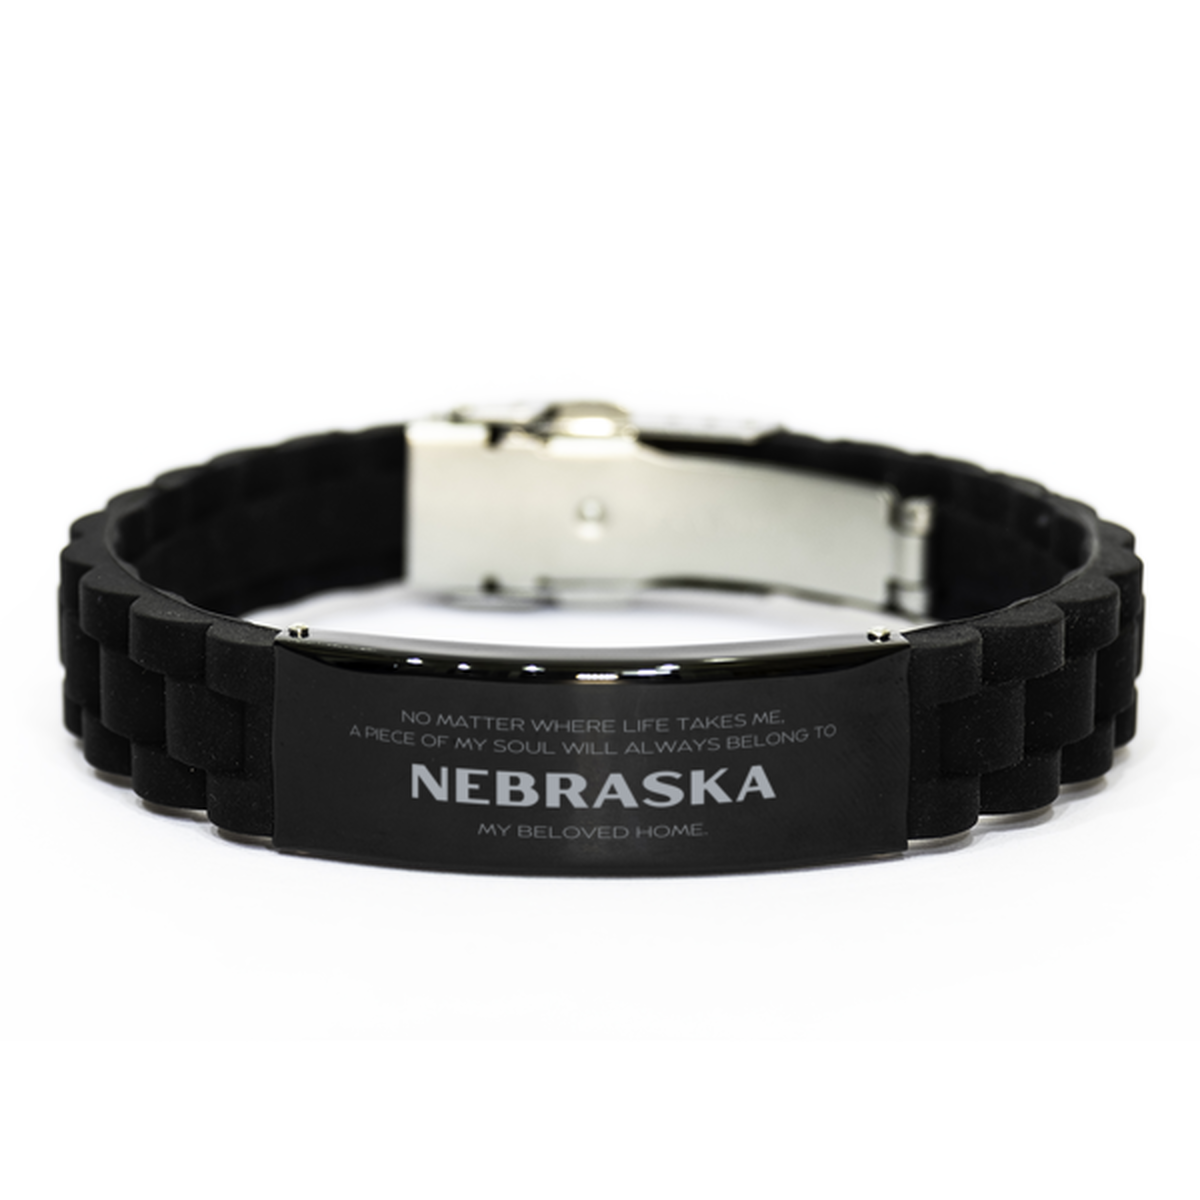 Love Nebraska State Gifts, My soul will always belong to Nebraska, Proud Black Glidelock Clasp Bracelet, Birthday Unique Gifts For Nebraska Men, Women, Friends